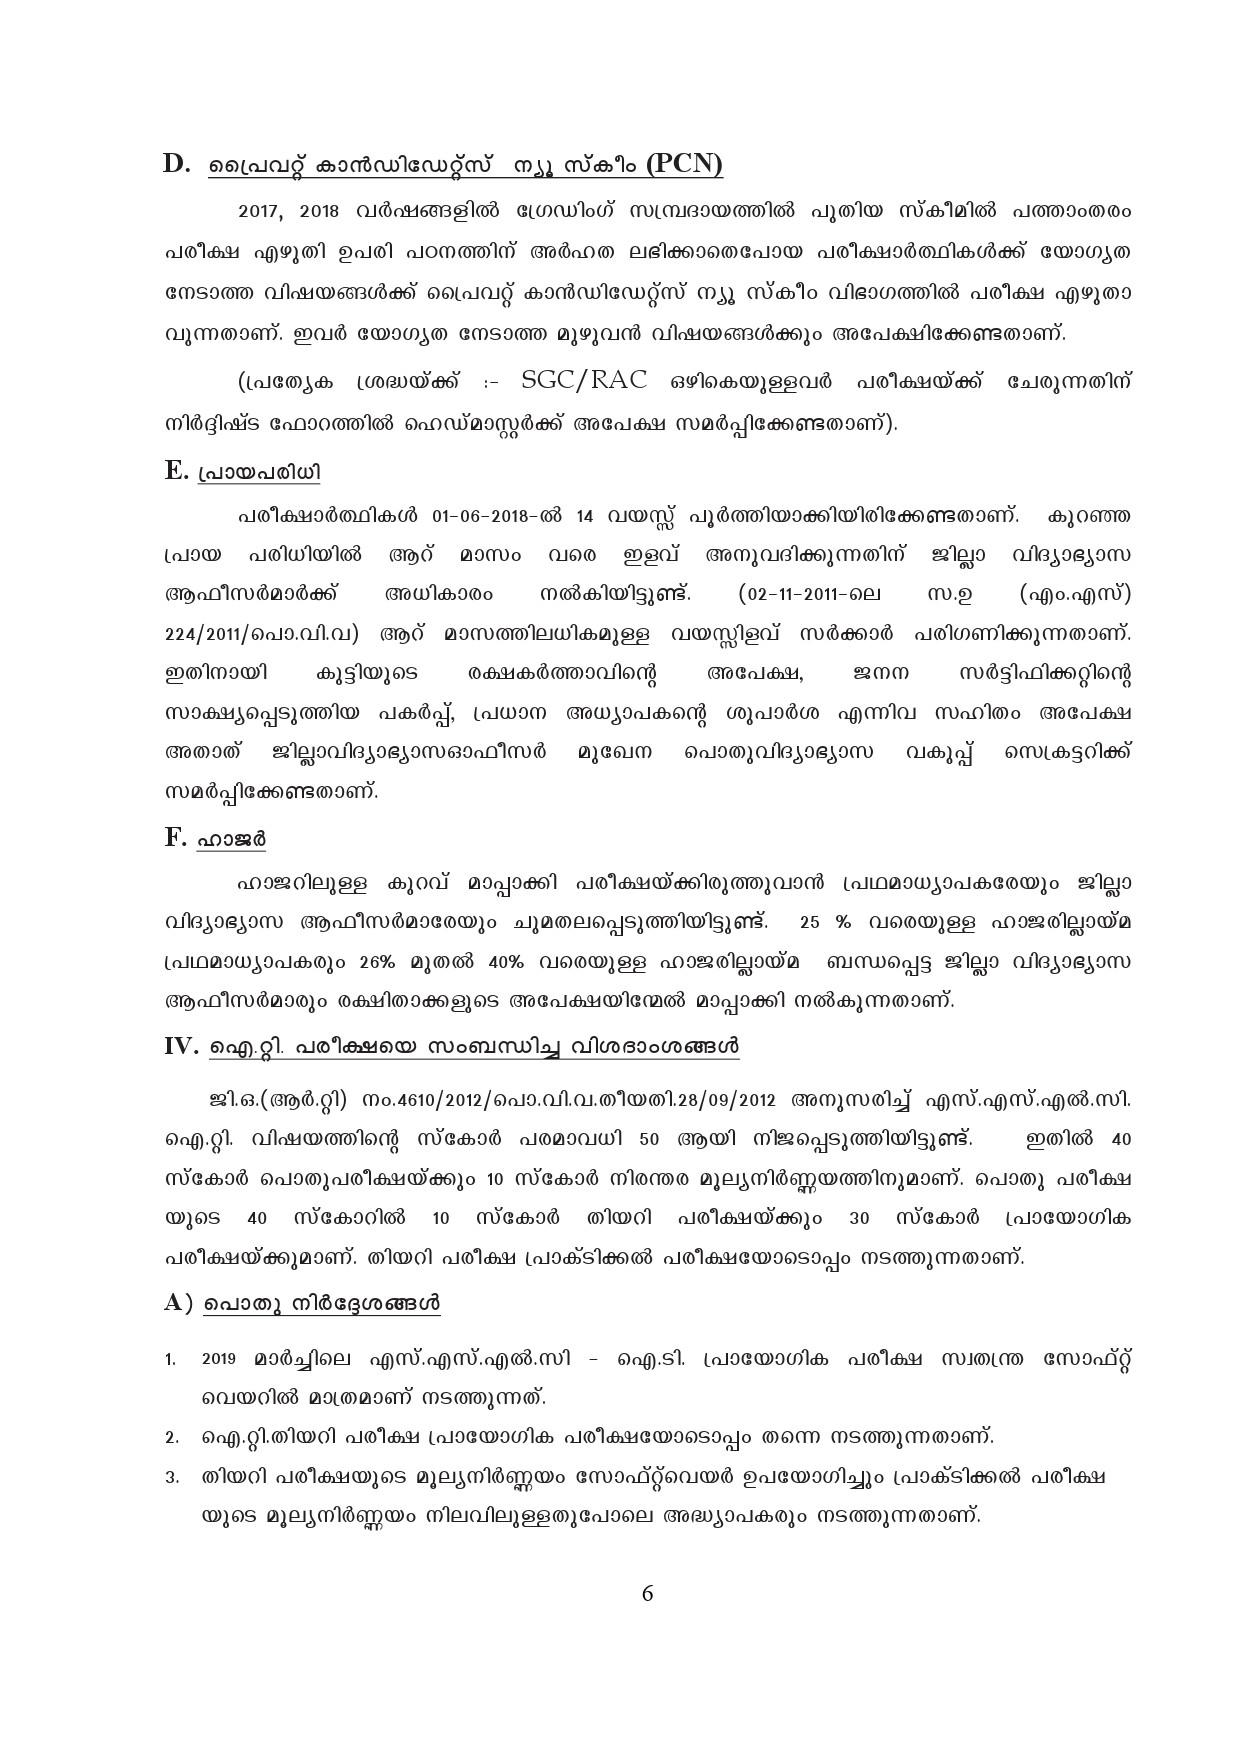 Kerala SSLC Exam Result 2019 - Notification Image 6